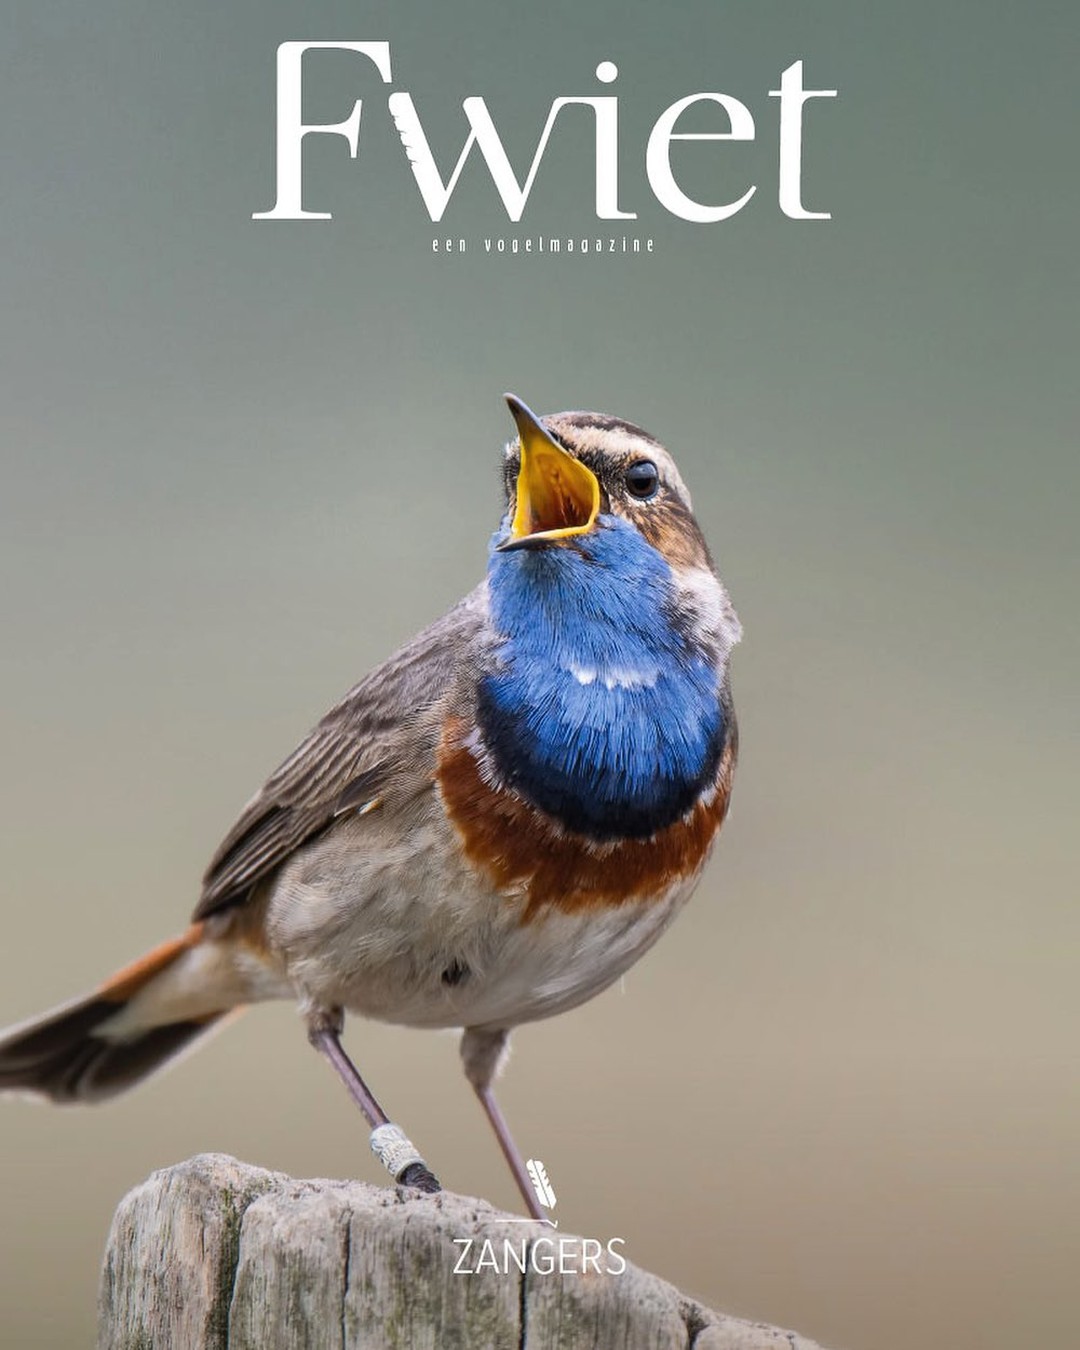 Vogelmagazine Fwiet aan derde editie toe!